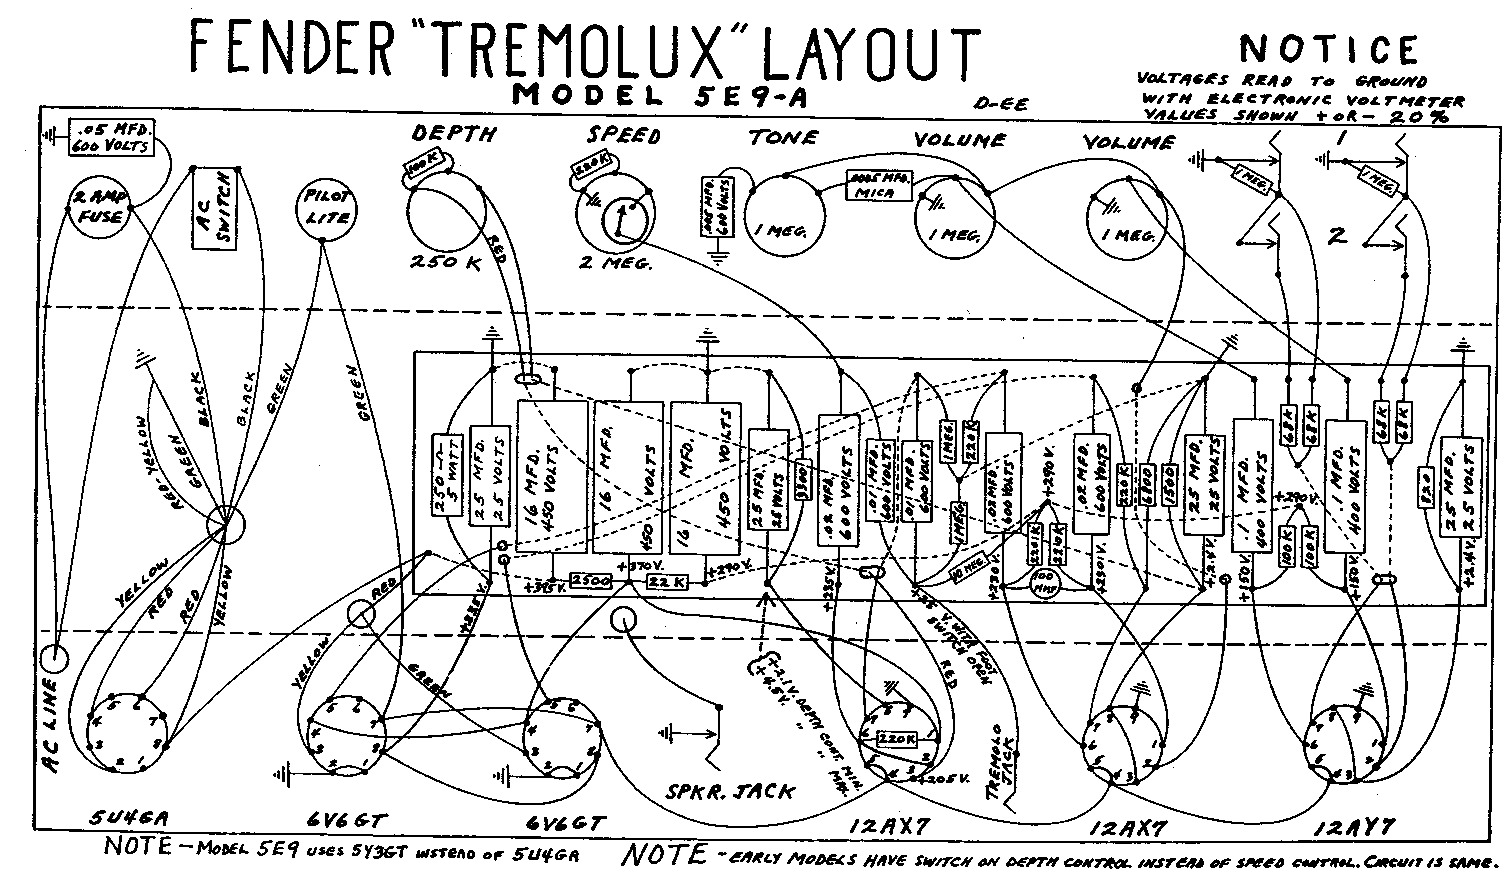 tremolux 5e9a layout.pdf